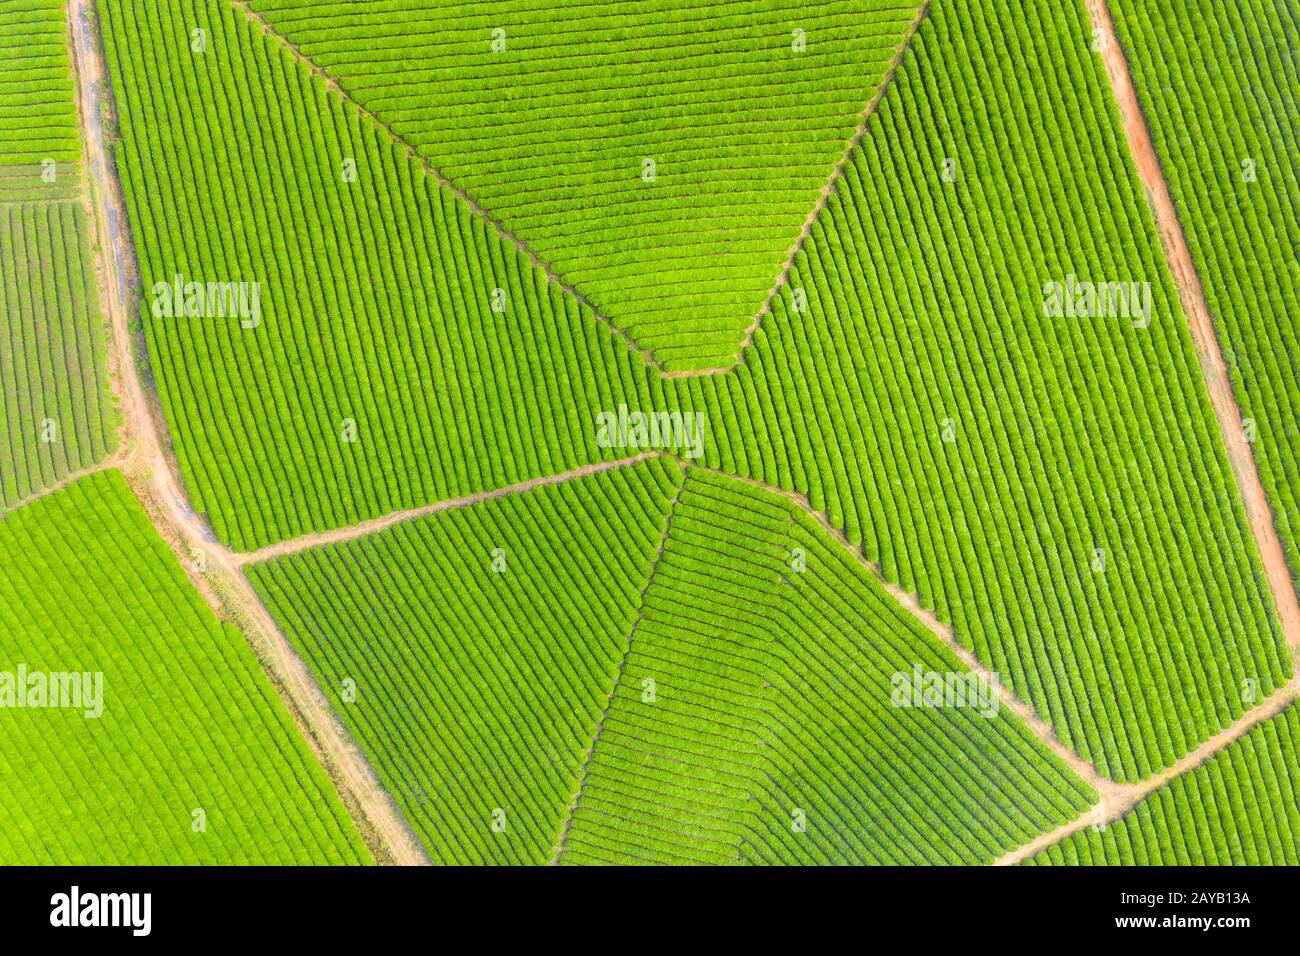 Vista aerea della piantagione di tè Foto Stock